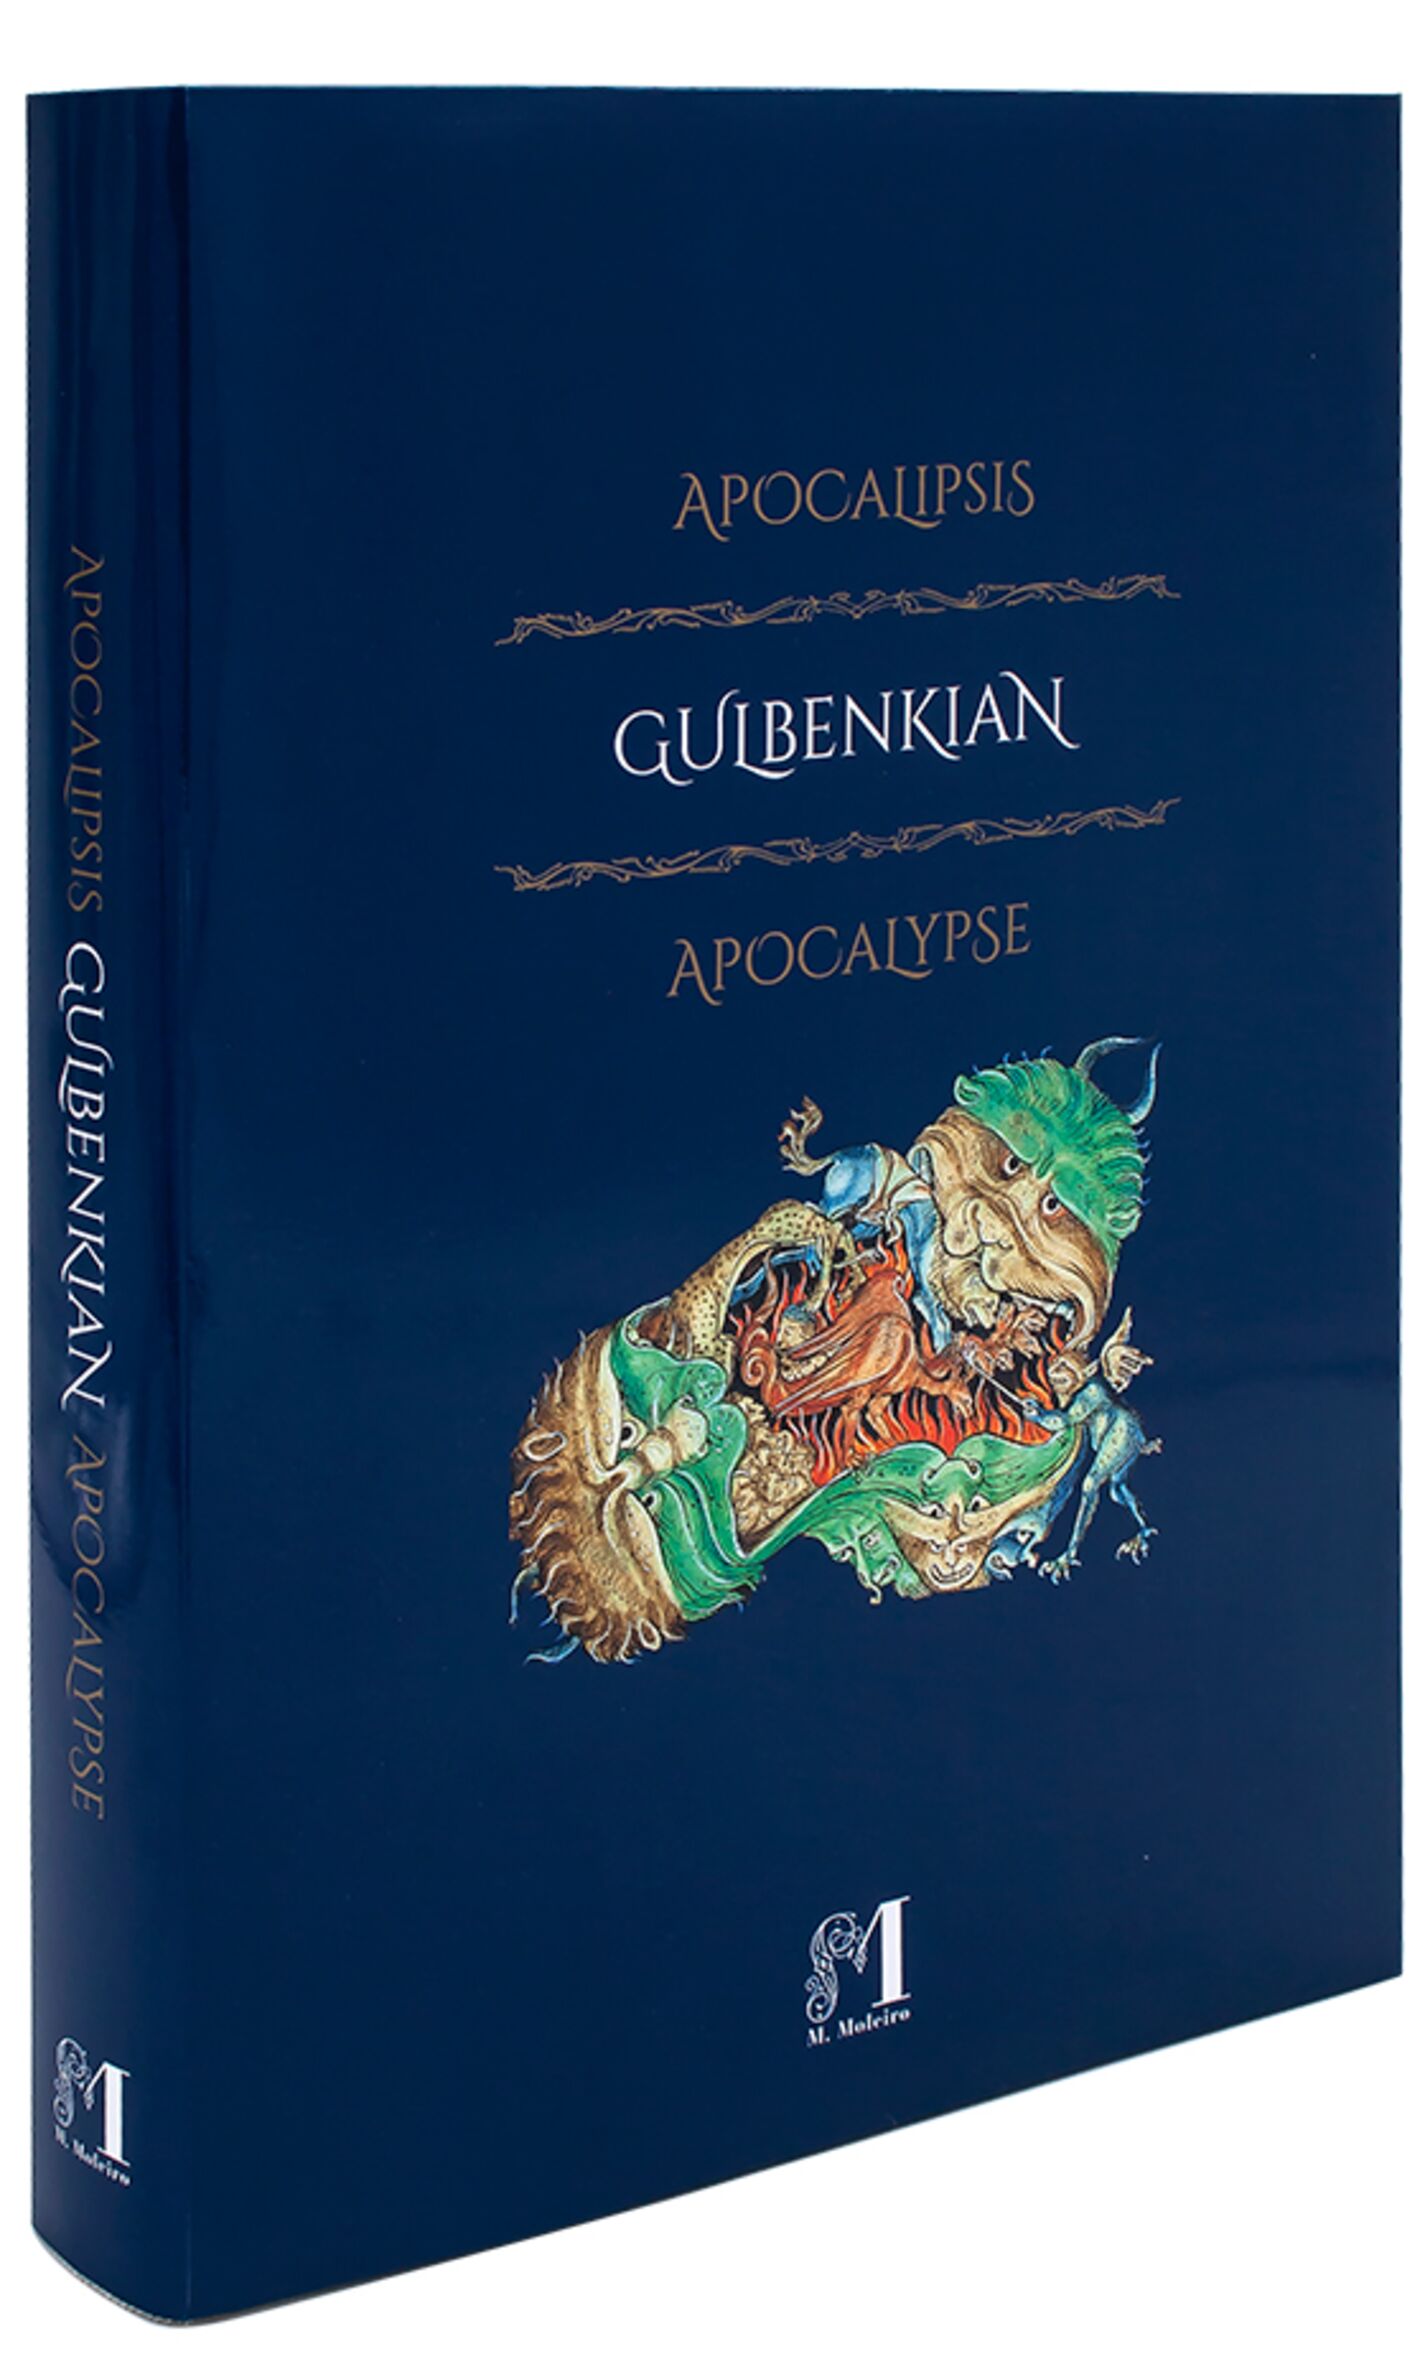 Portada libro de arte Apocalipsis Gulbenkian